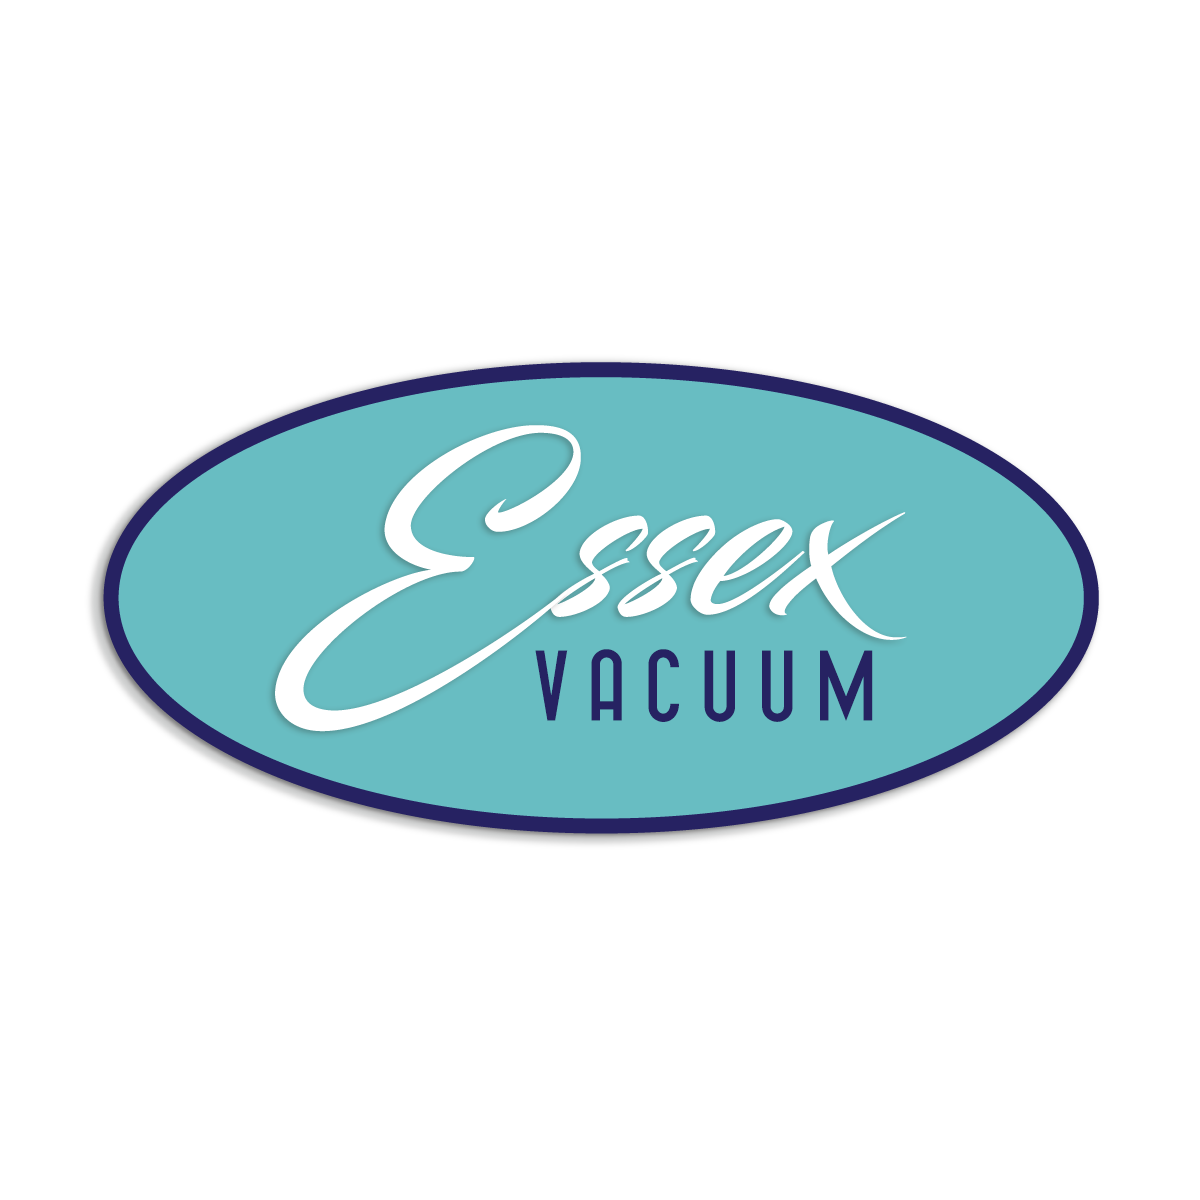 Essex Vacuum